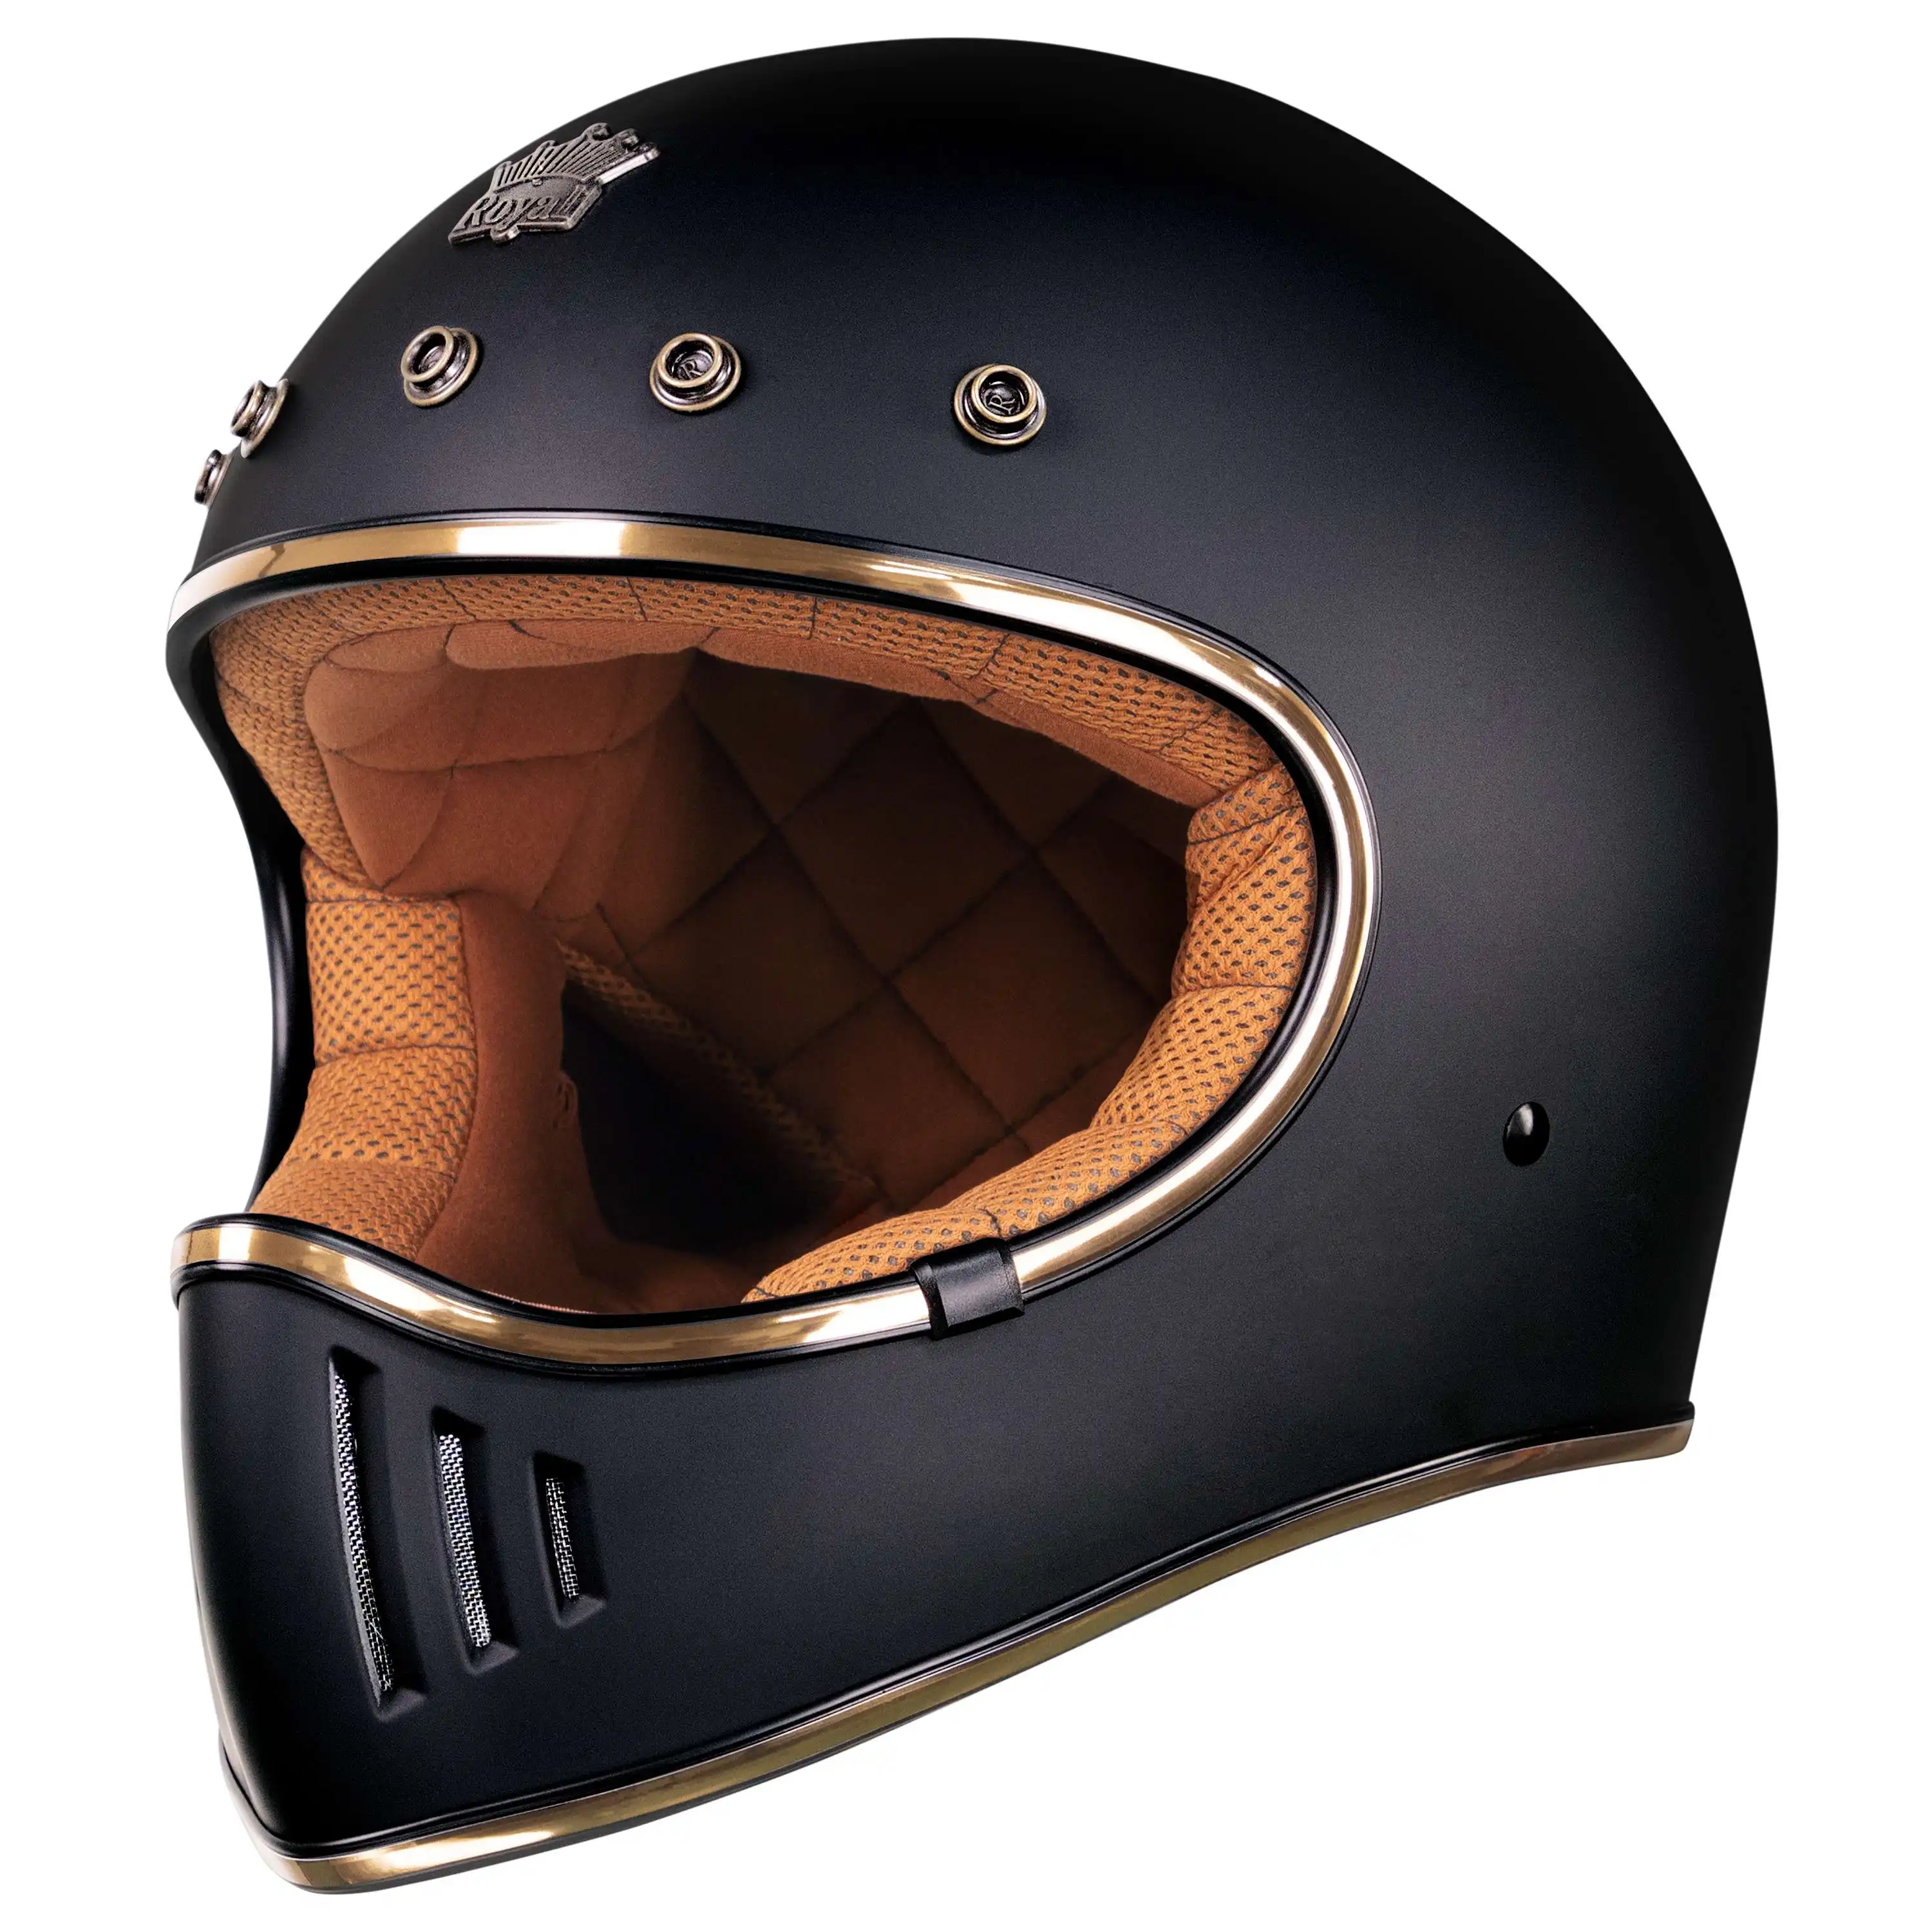 隠しバイザー付きベストセラーヴィンテージフルフェイスクラシックデザインヘルメット高品質の高度なABSロイヤルM141 OEM顧客向け